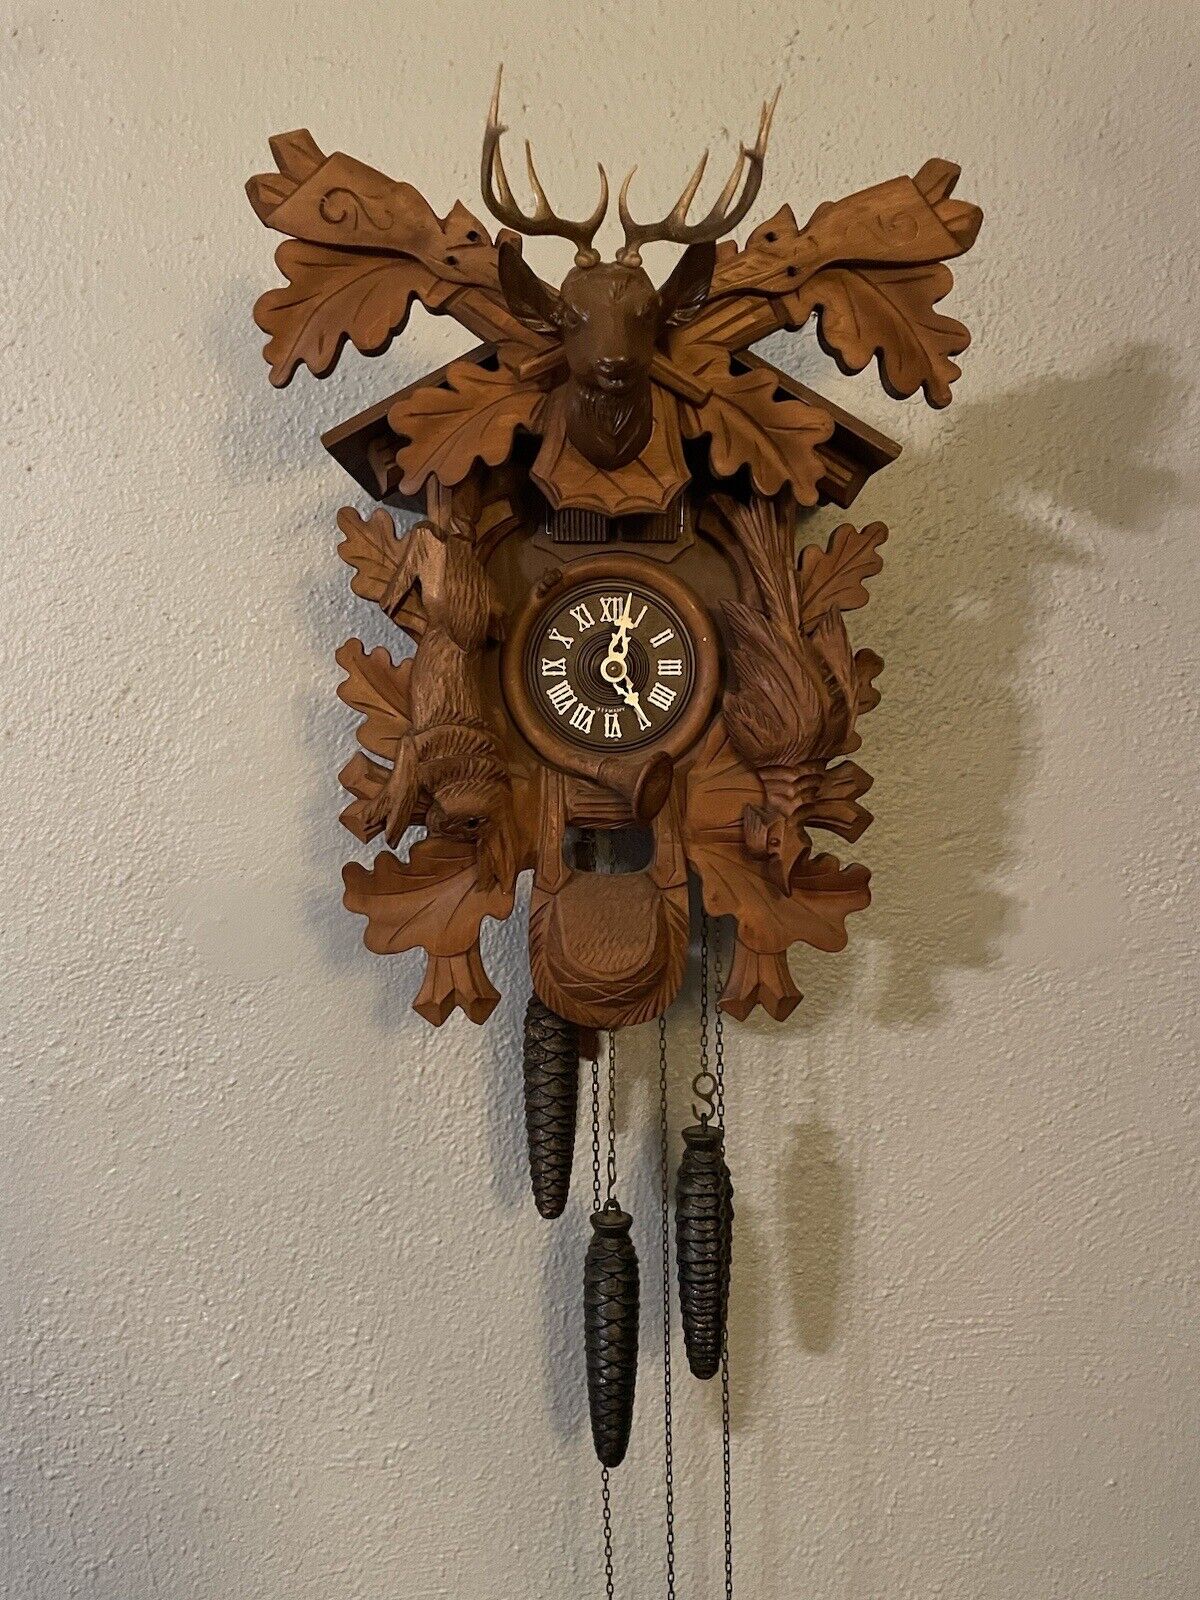 Theorems Emperor Waltz Black Forrest  Vintage Hunter Cuckoo Clock (Working)